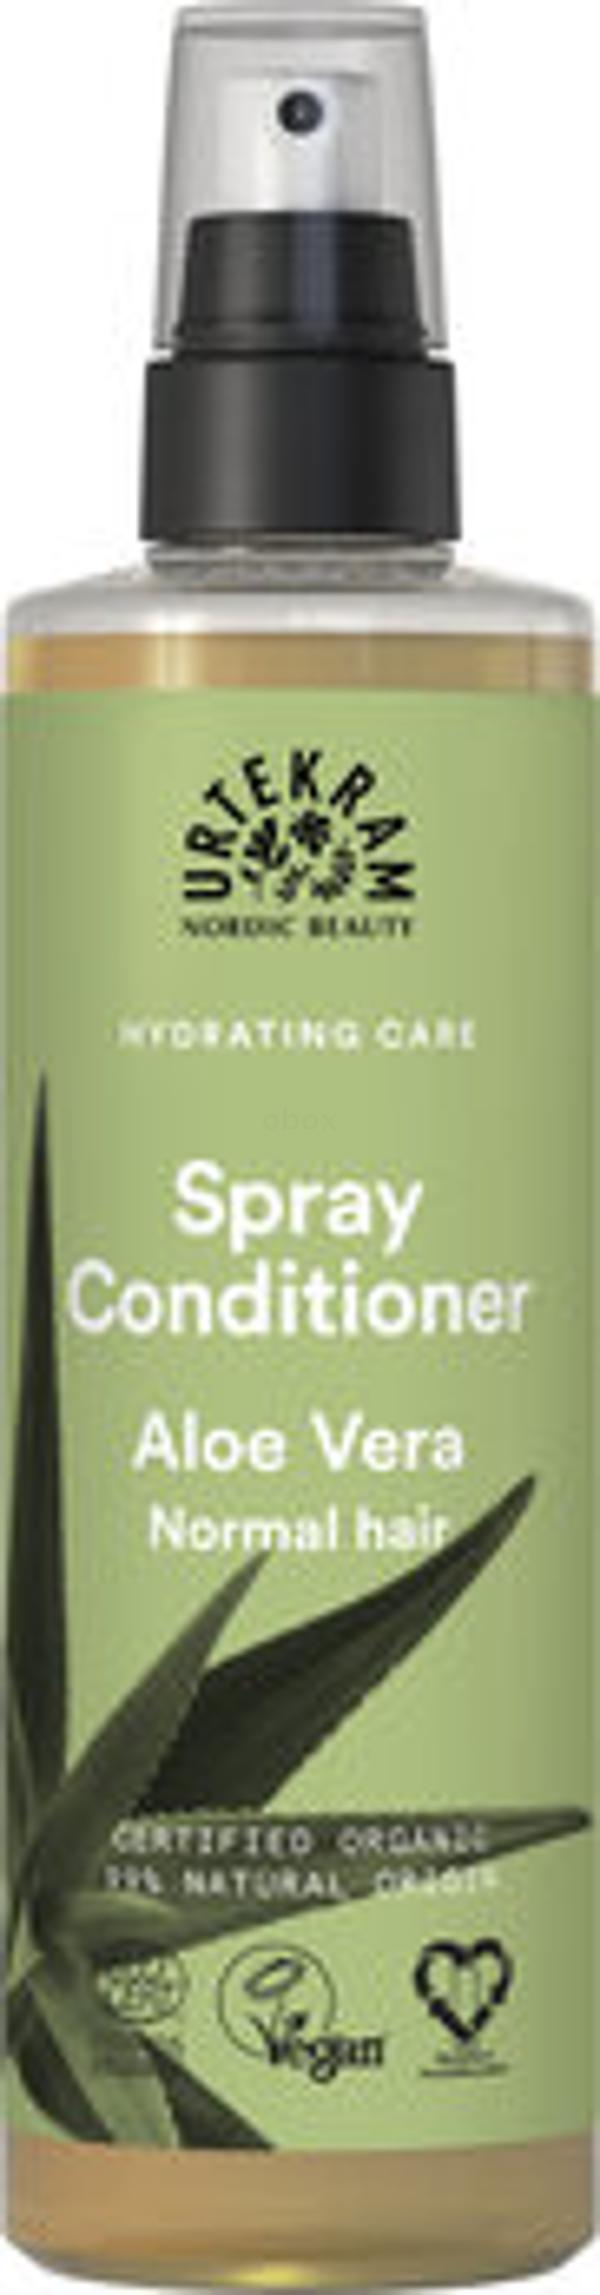 Produktfoto zu Revitalizing Spray Conditioner